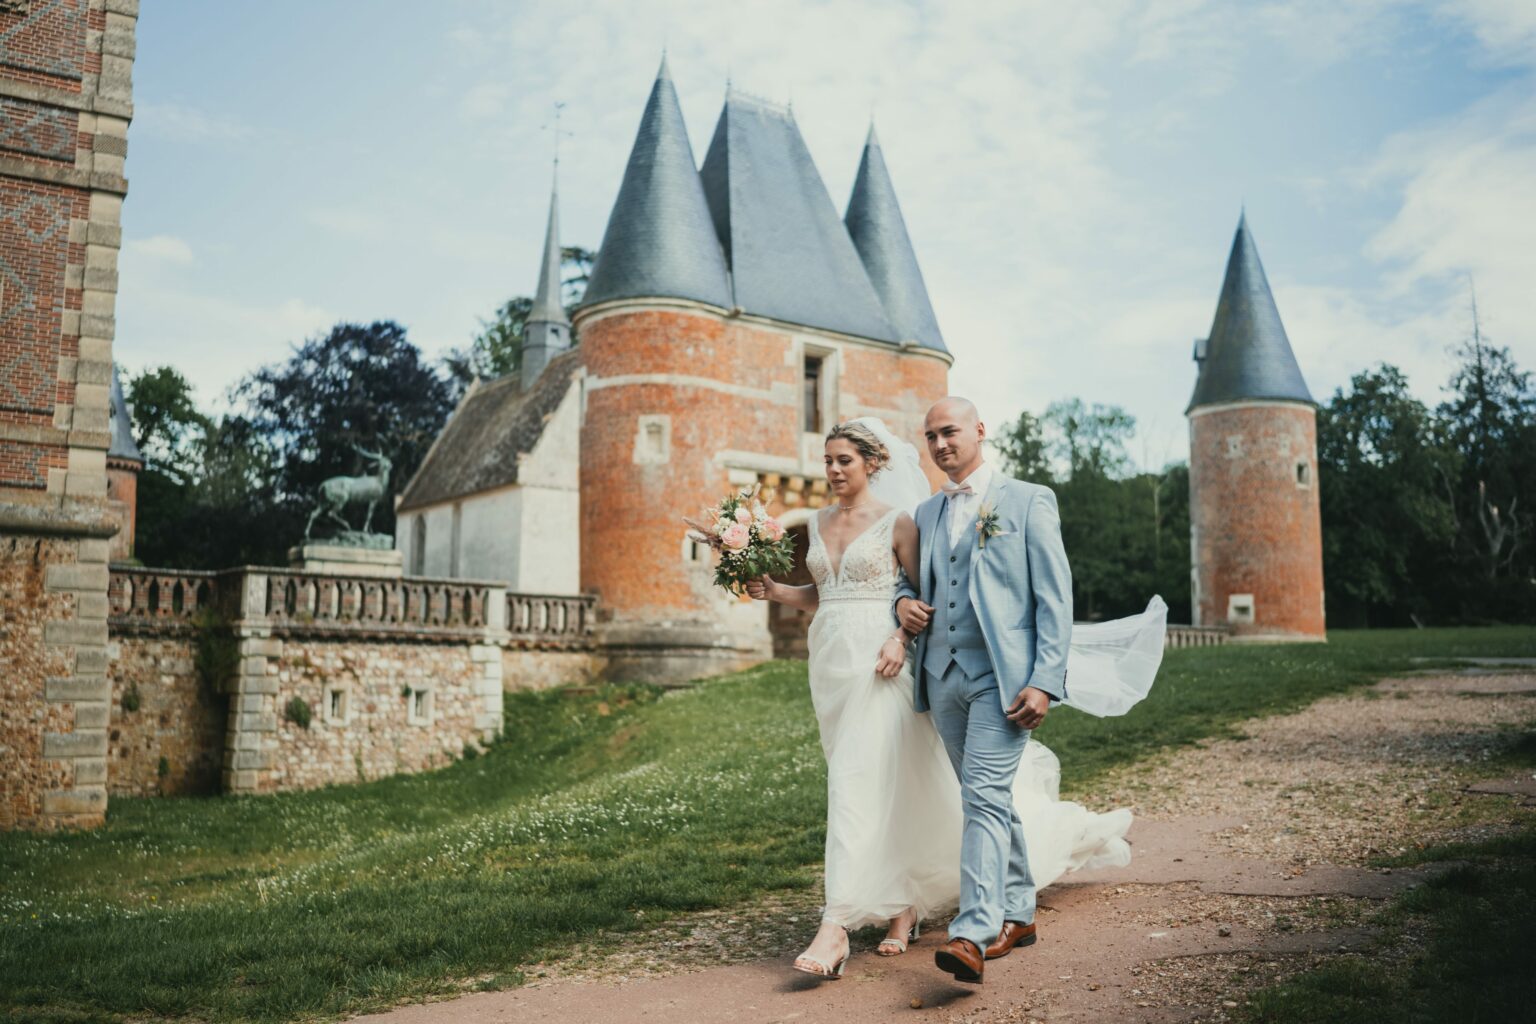 Le mariage de Sonia et Tanguy – par Alain Leprevost photographe videÌaste -733